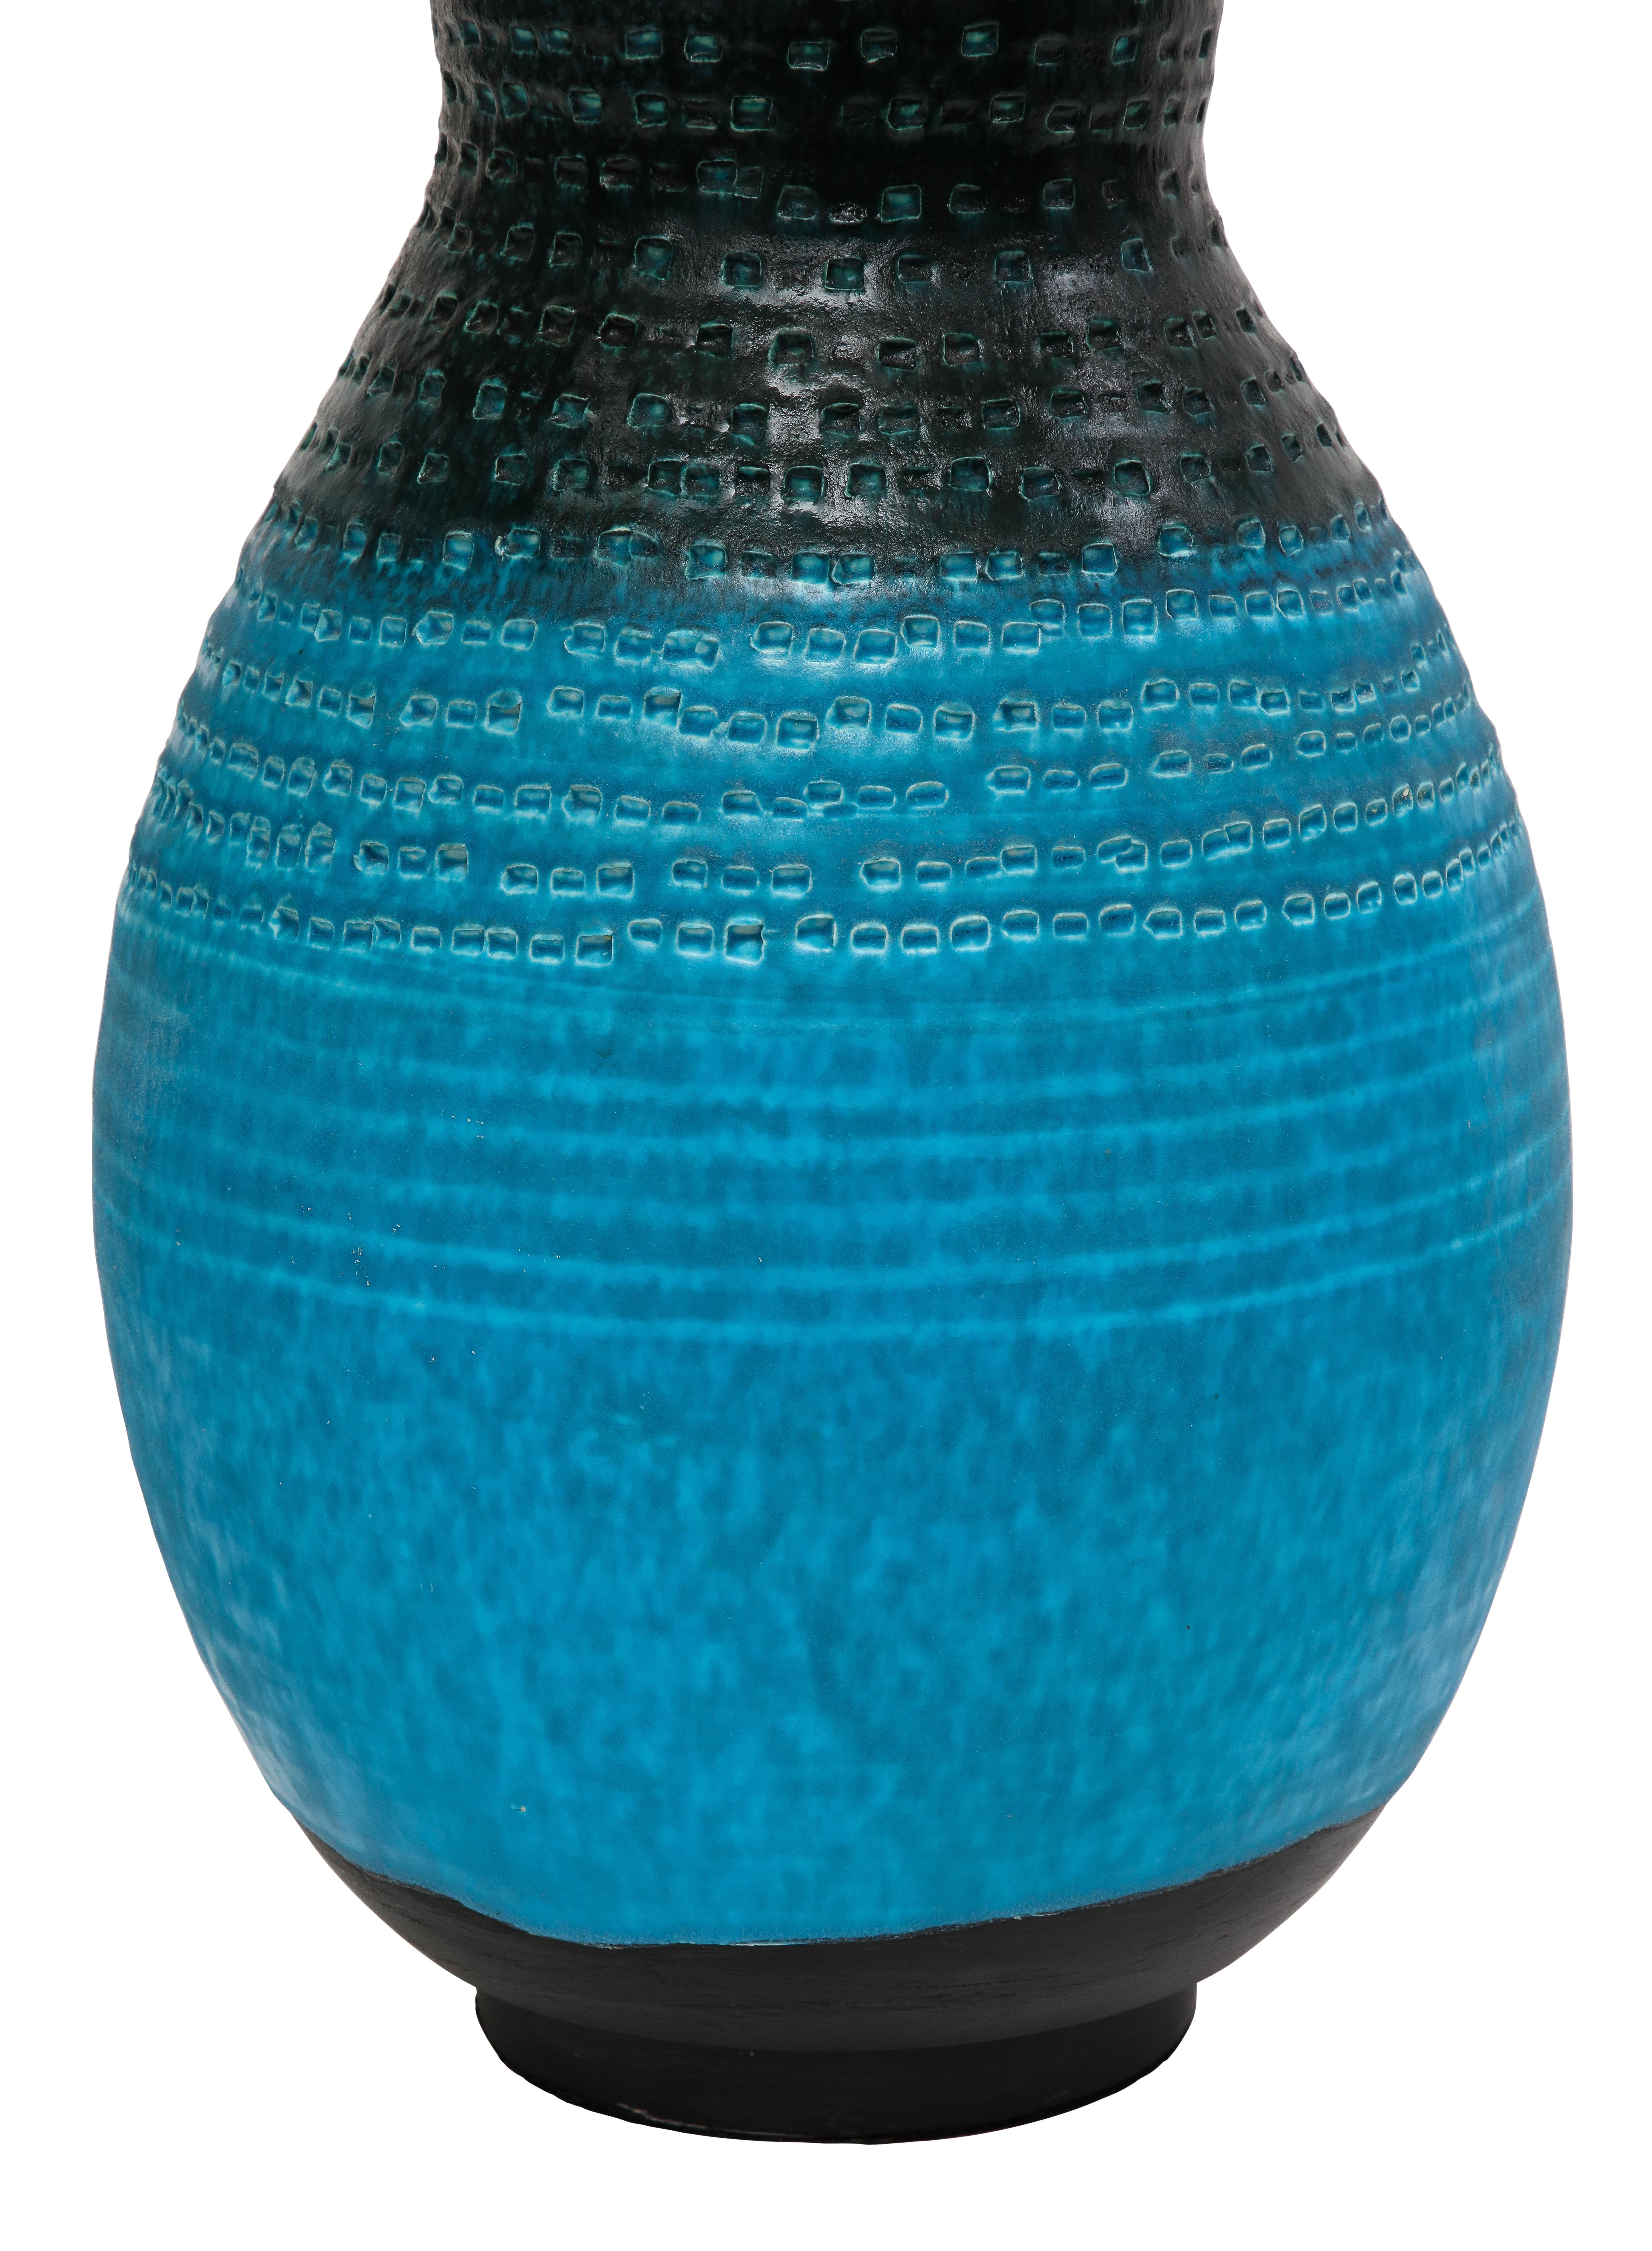 Alvino Bagni Table Lamp, Ceramic, Blue, Black, Impressed 5